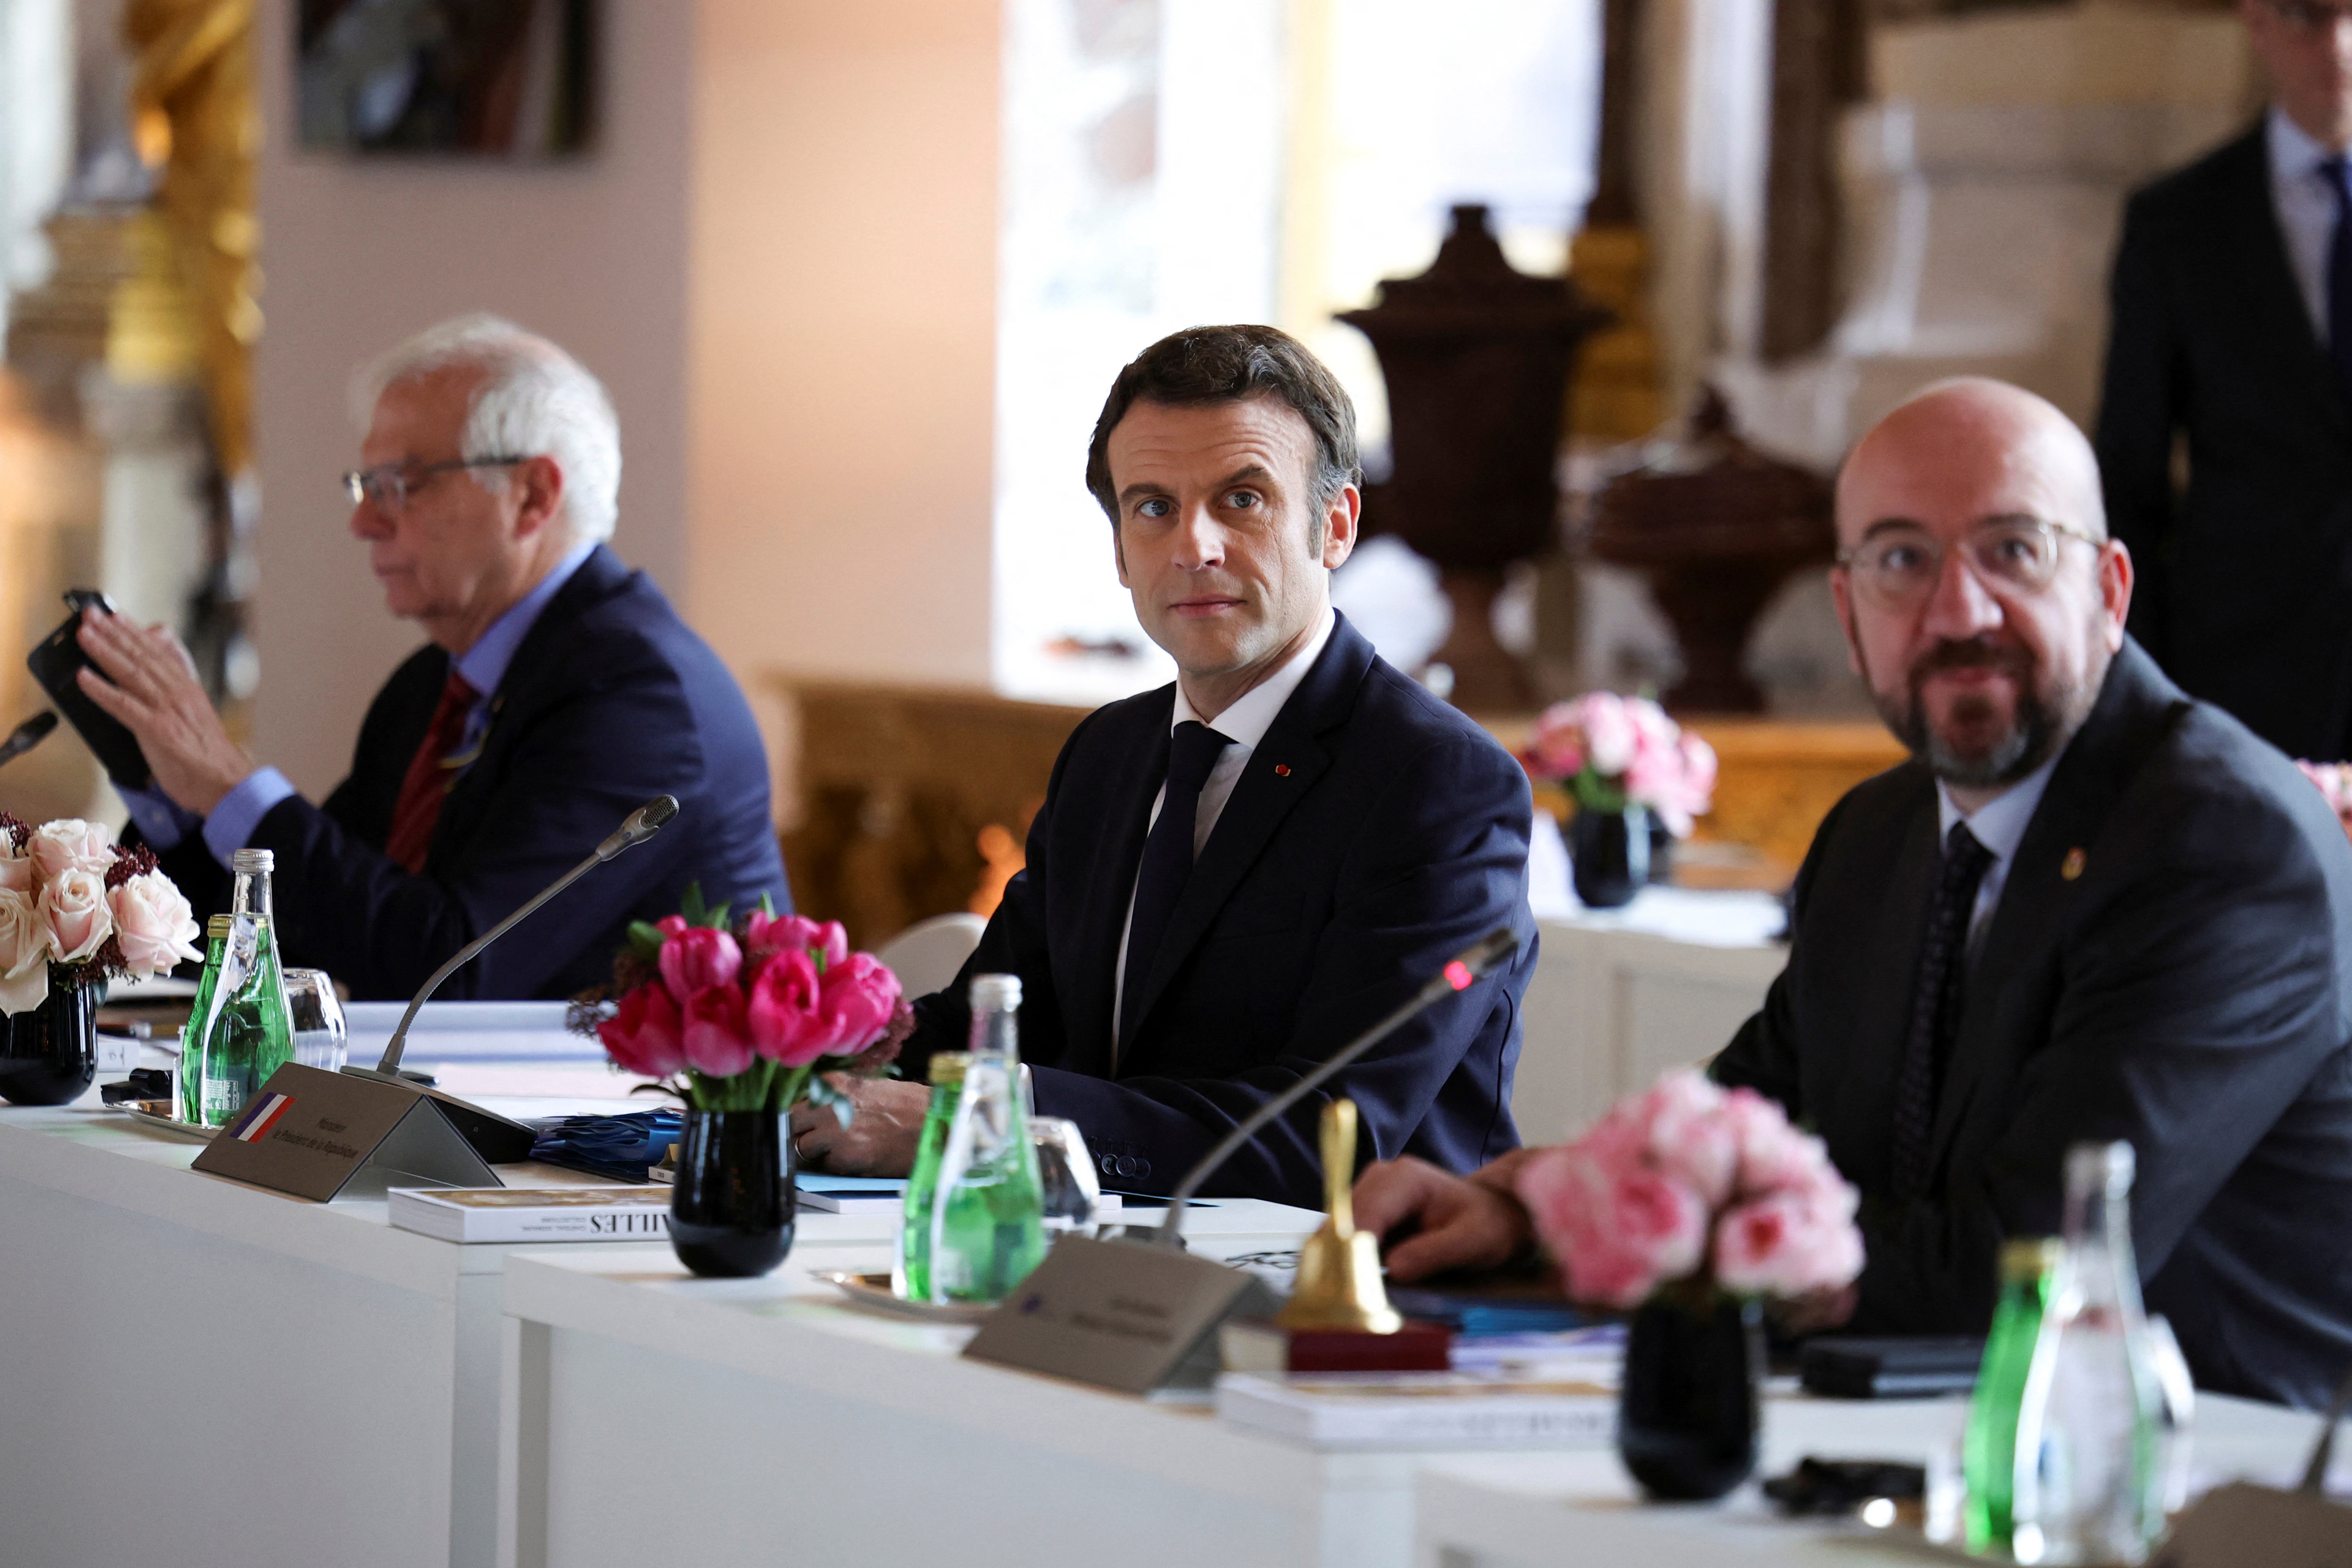 Emmanuel Macron attends a meeting on the Ukraine crisis in Versailles last week